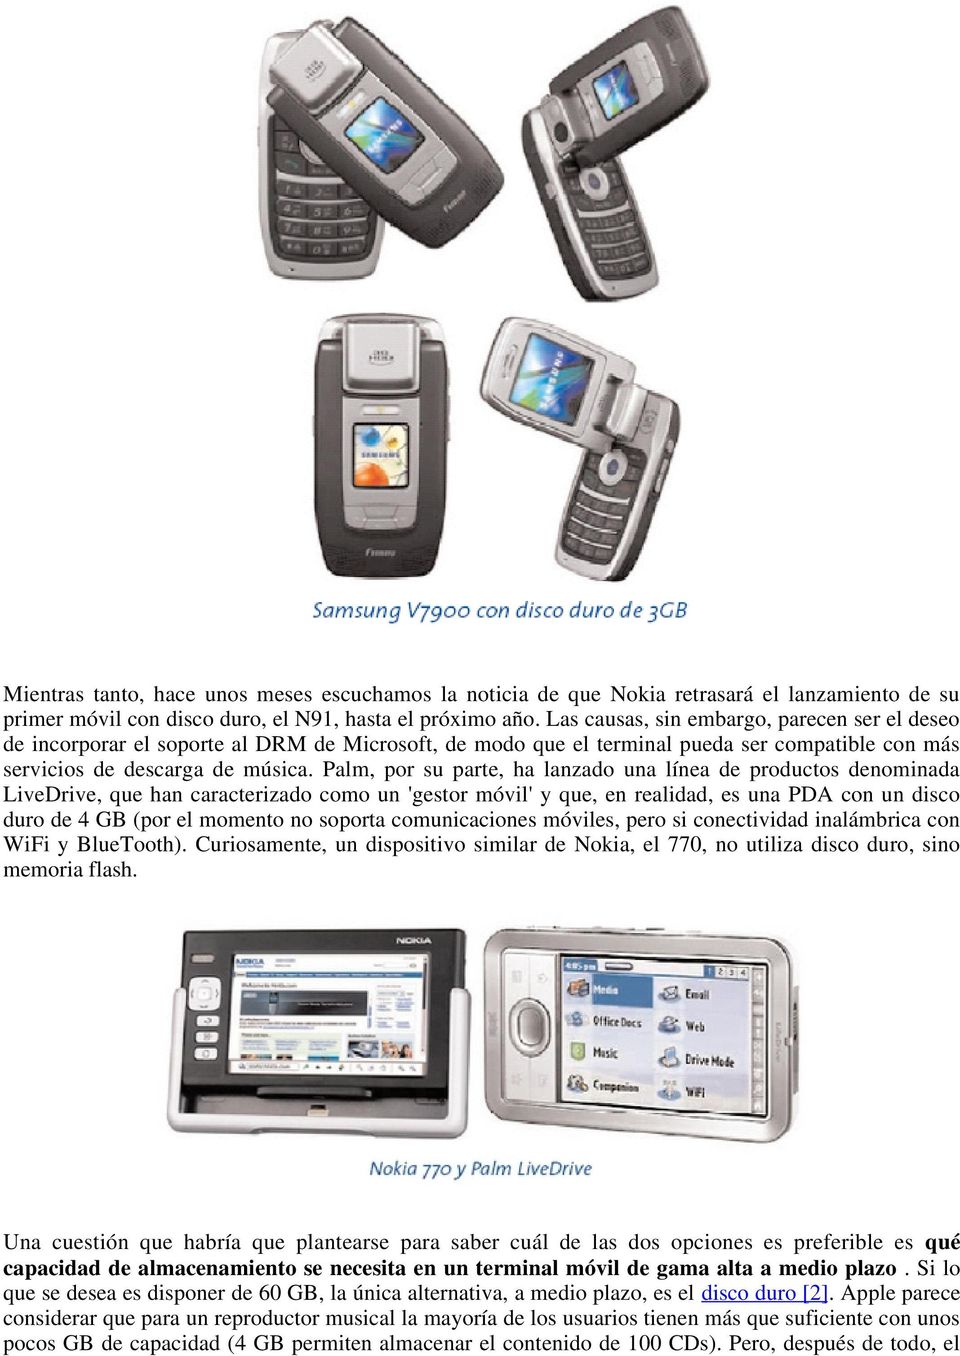 Palm, por su parte, ha lanzado una línea de productos denominada LiveDrive, que han caracterizado como un 'gestor móvil' y que, en realidad, es una PDA con un disco duro de 4 GB (por el momento no